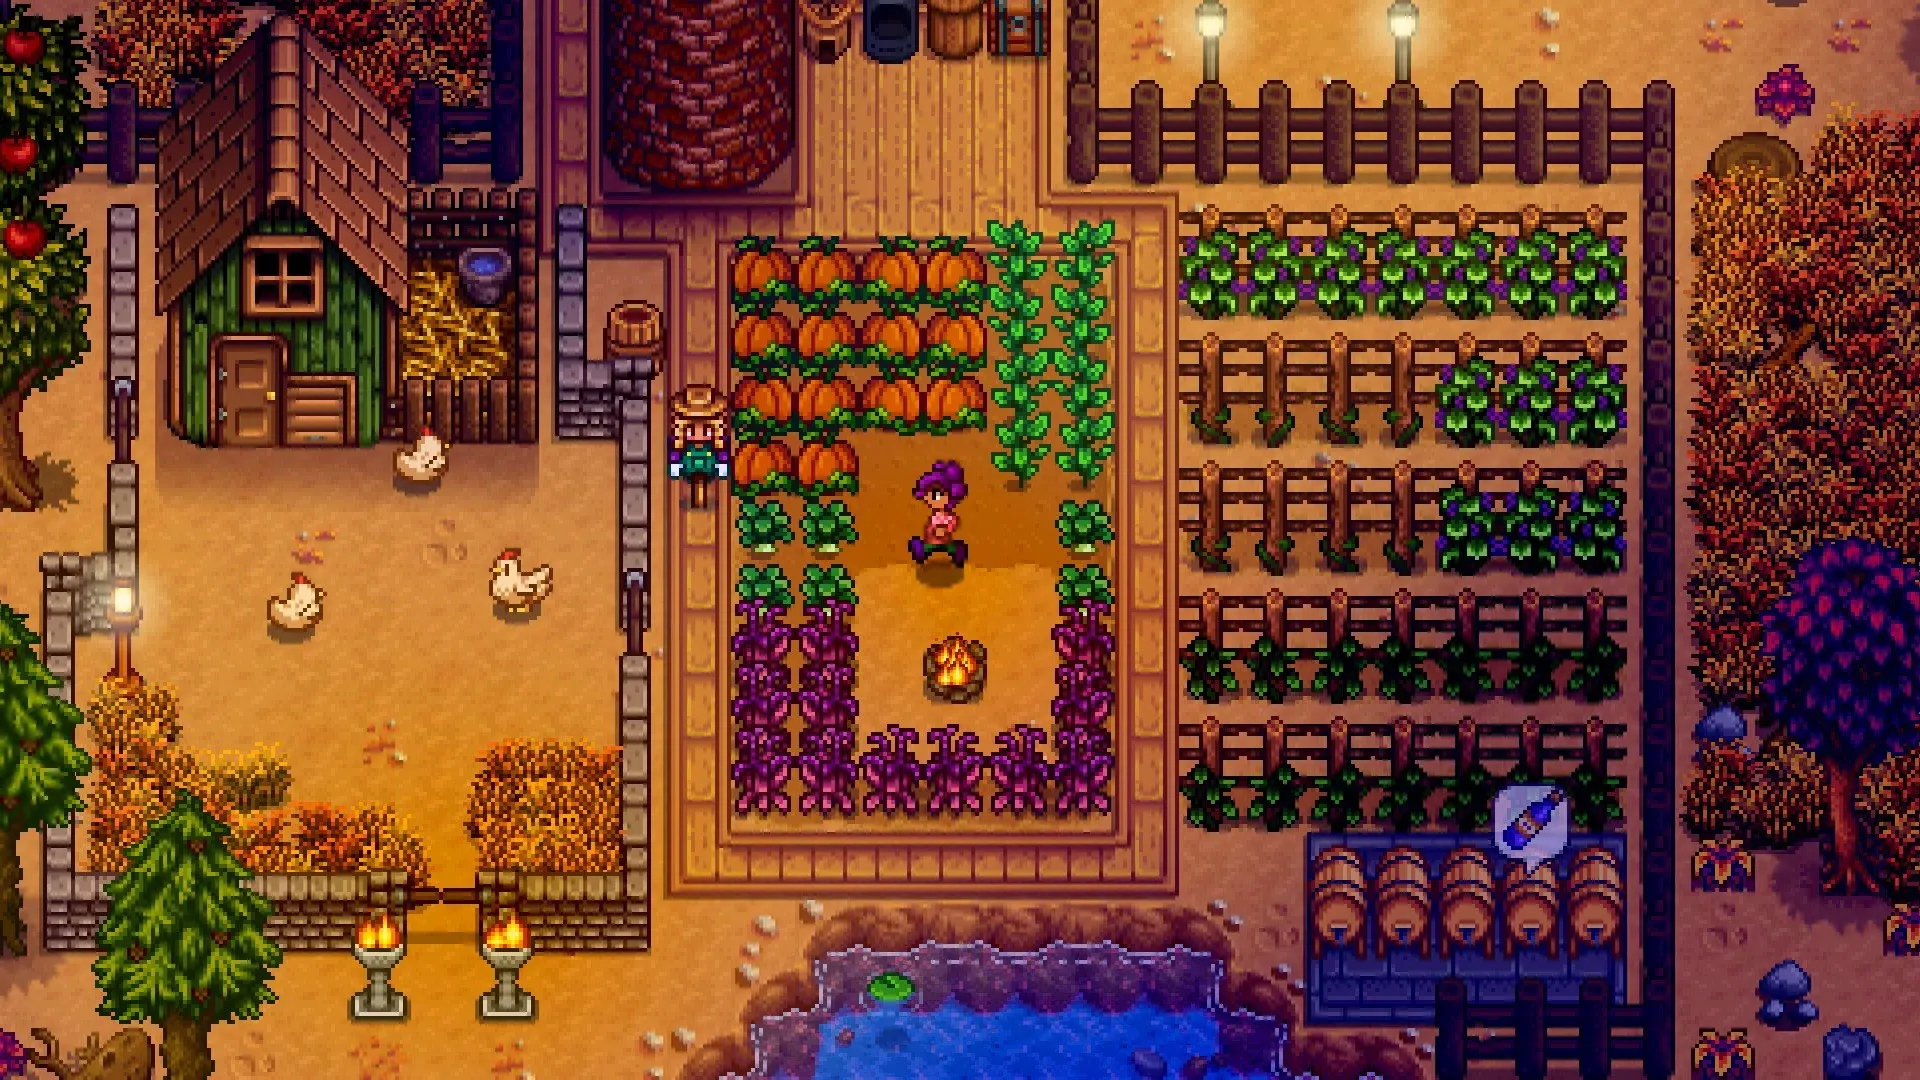 Imagem do jogo Stardew Valley no qual um personagem no centro da tela anda por sua fazenda ao entardecer, repleto de legumes plantados ao seu redor com um visual retrô como do Super Nintendo